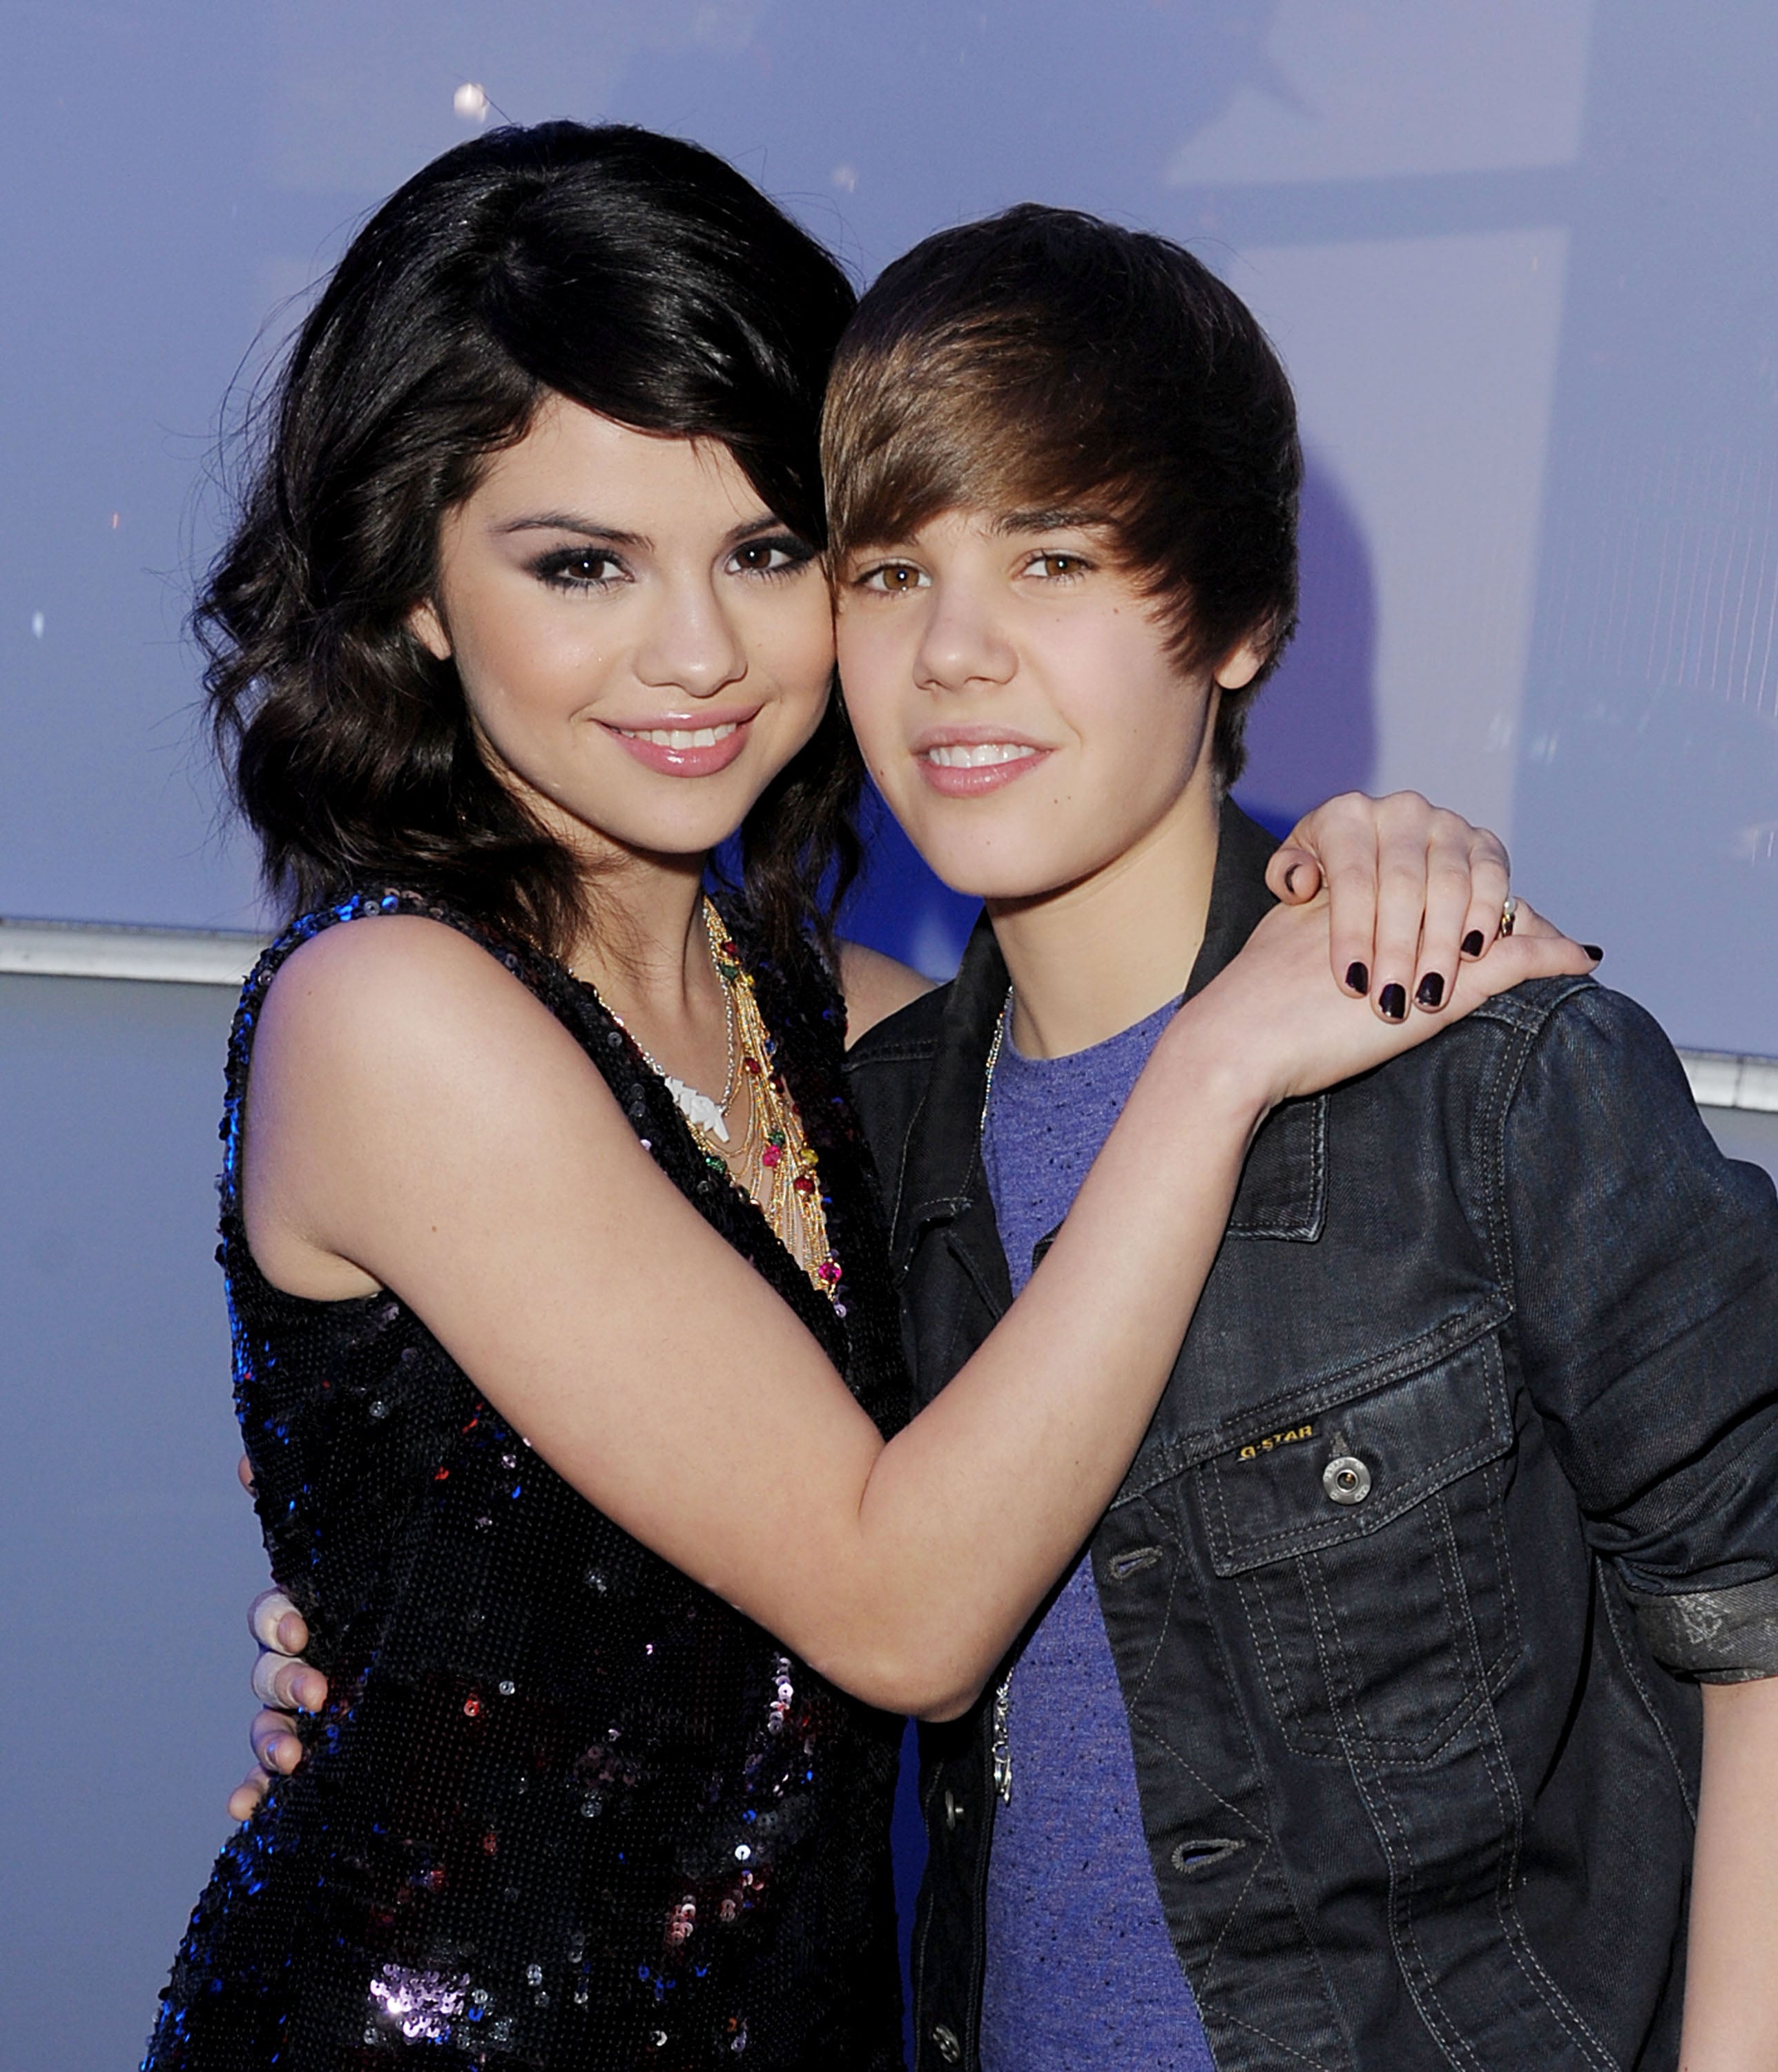 Selena Gomez and Justin Bieber's Relationship Timeline | POPSUGAR Celebrity